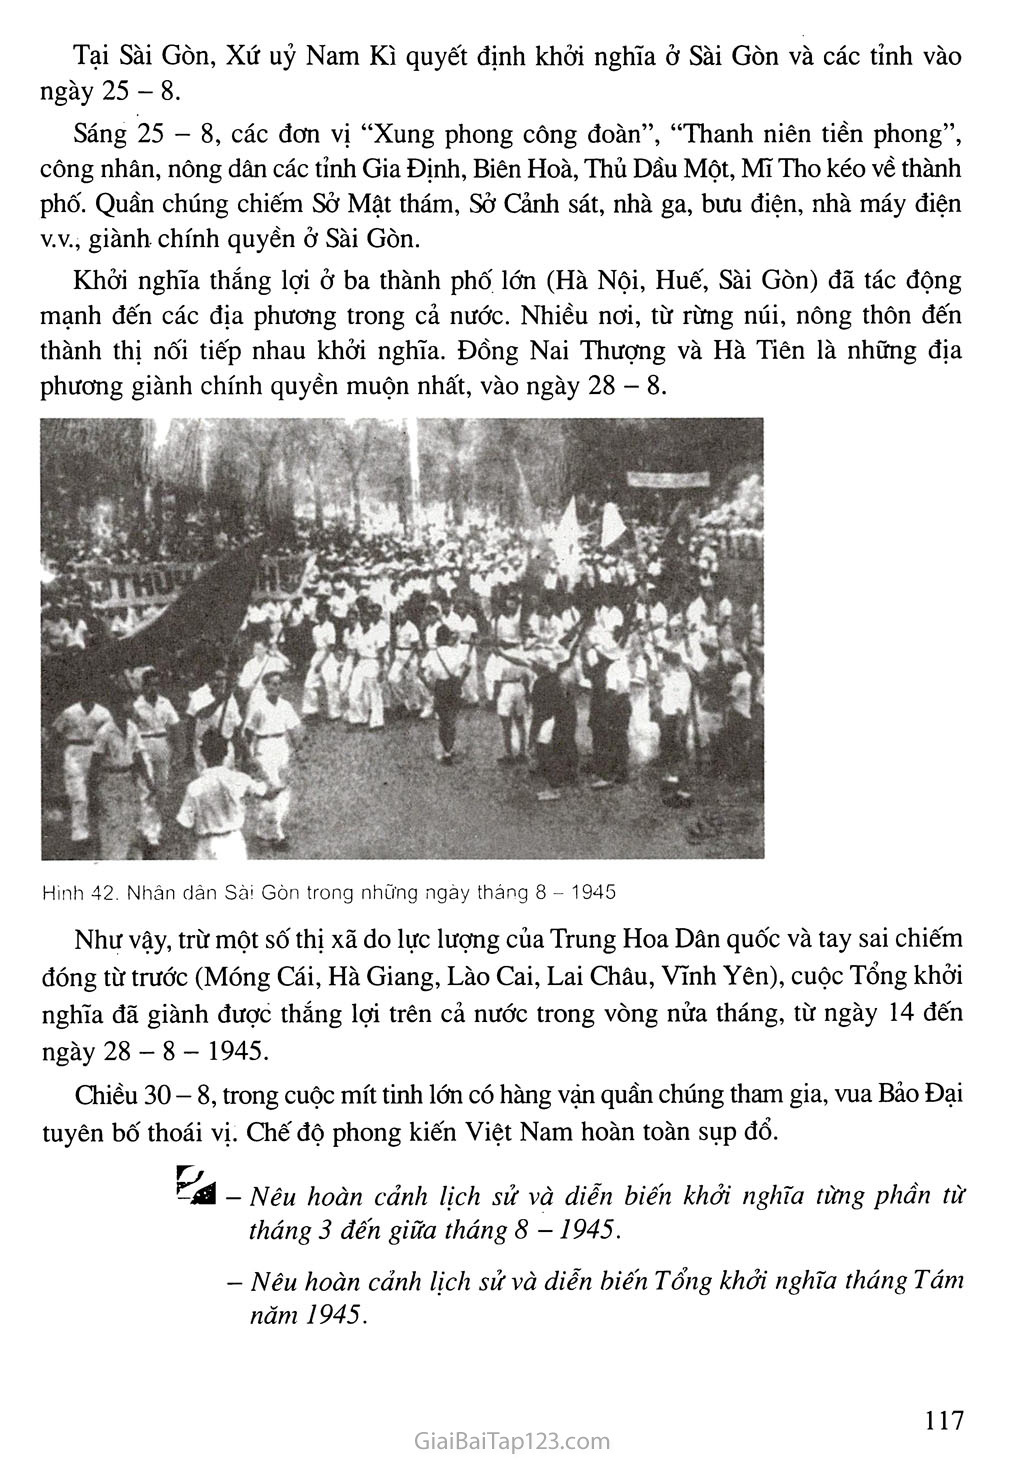 Bài 16. Phong trào giải phóng dân tộc và Tổng khởi nghĩa tháng Tám (1939 - 1945). Nước Việt Nam Dân chủ Cộng hoà ra đời trang 16